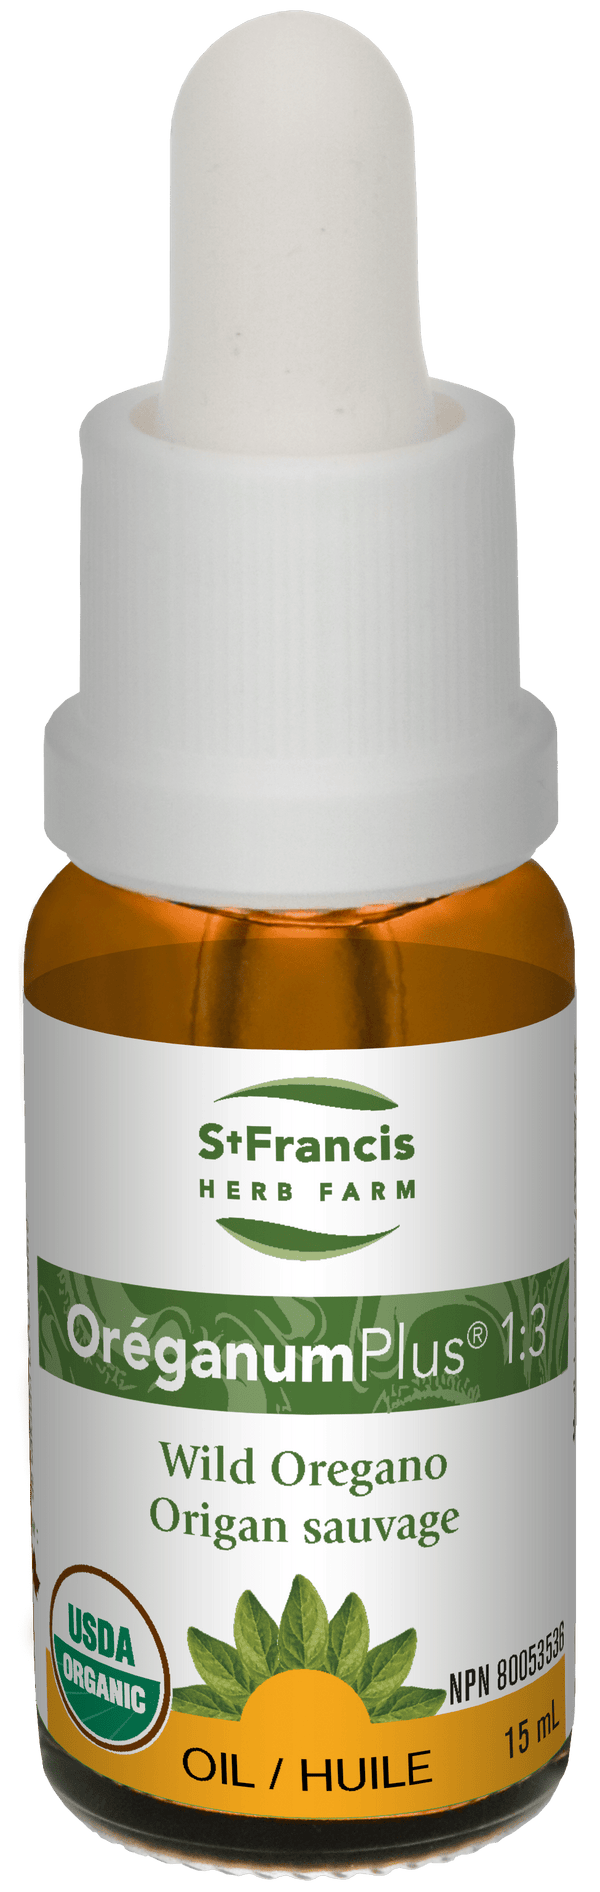 St Francis Herb Farm Oreganum Plus 1:3 15 ml